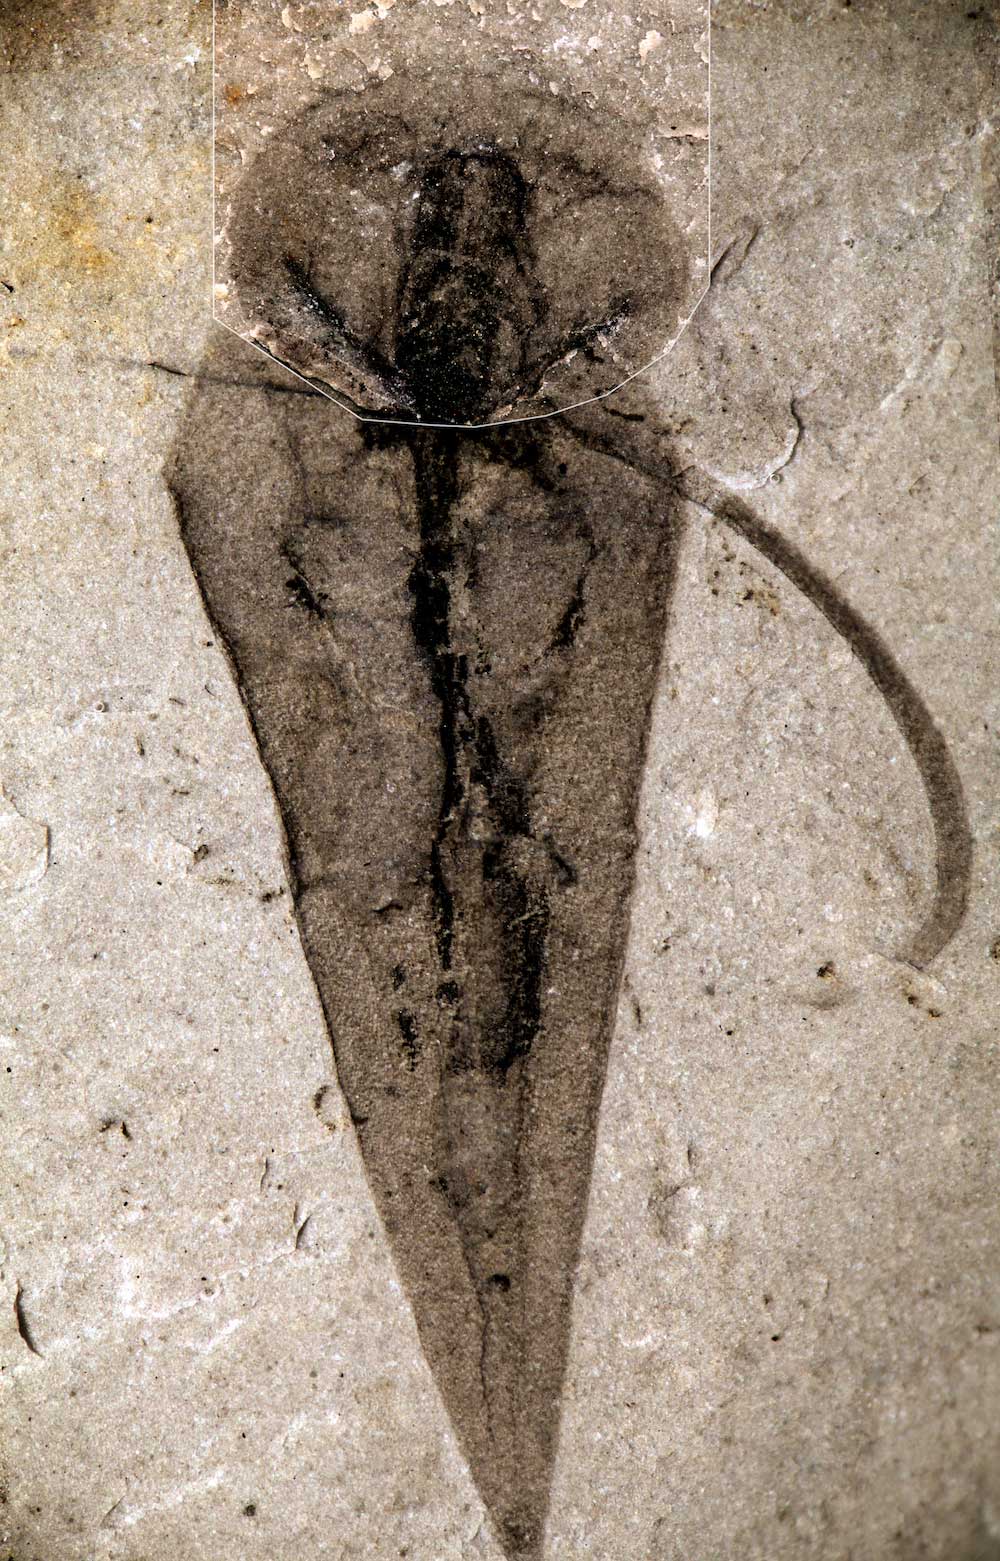 ヒオリテス類ハプロフレンティス（<i>Haplophrentis carinatus</i>）の化石の画像。触手冠と咽頭、ほぼ完全な腸など、軟組織が良好な状態で保存されている。